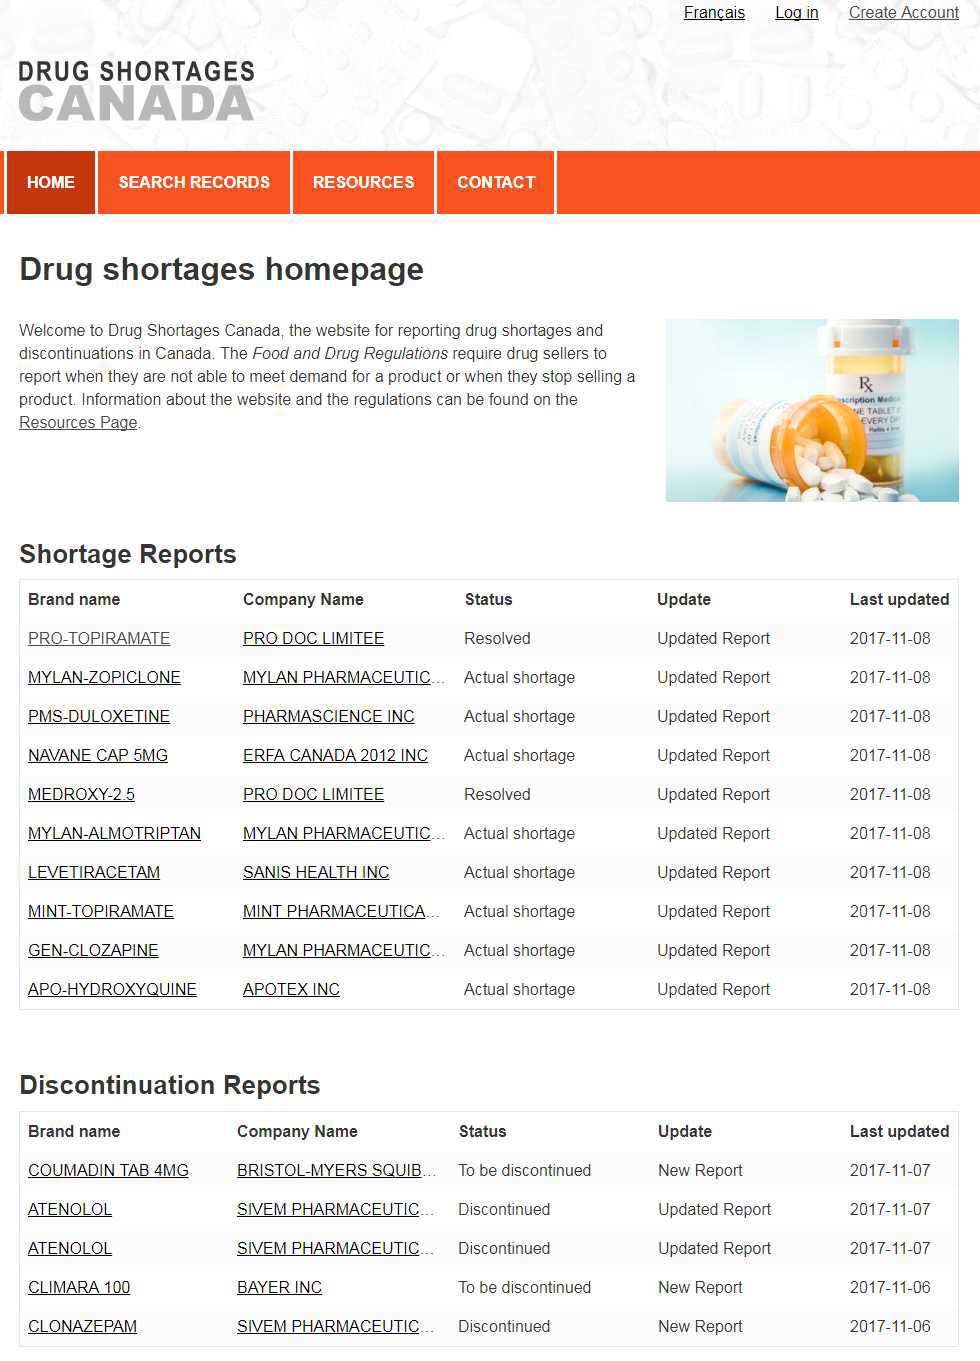 캐나다 의약품 부족 보고 웹사이트(www.drugshortagescanada.ca)의 첫 화면